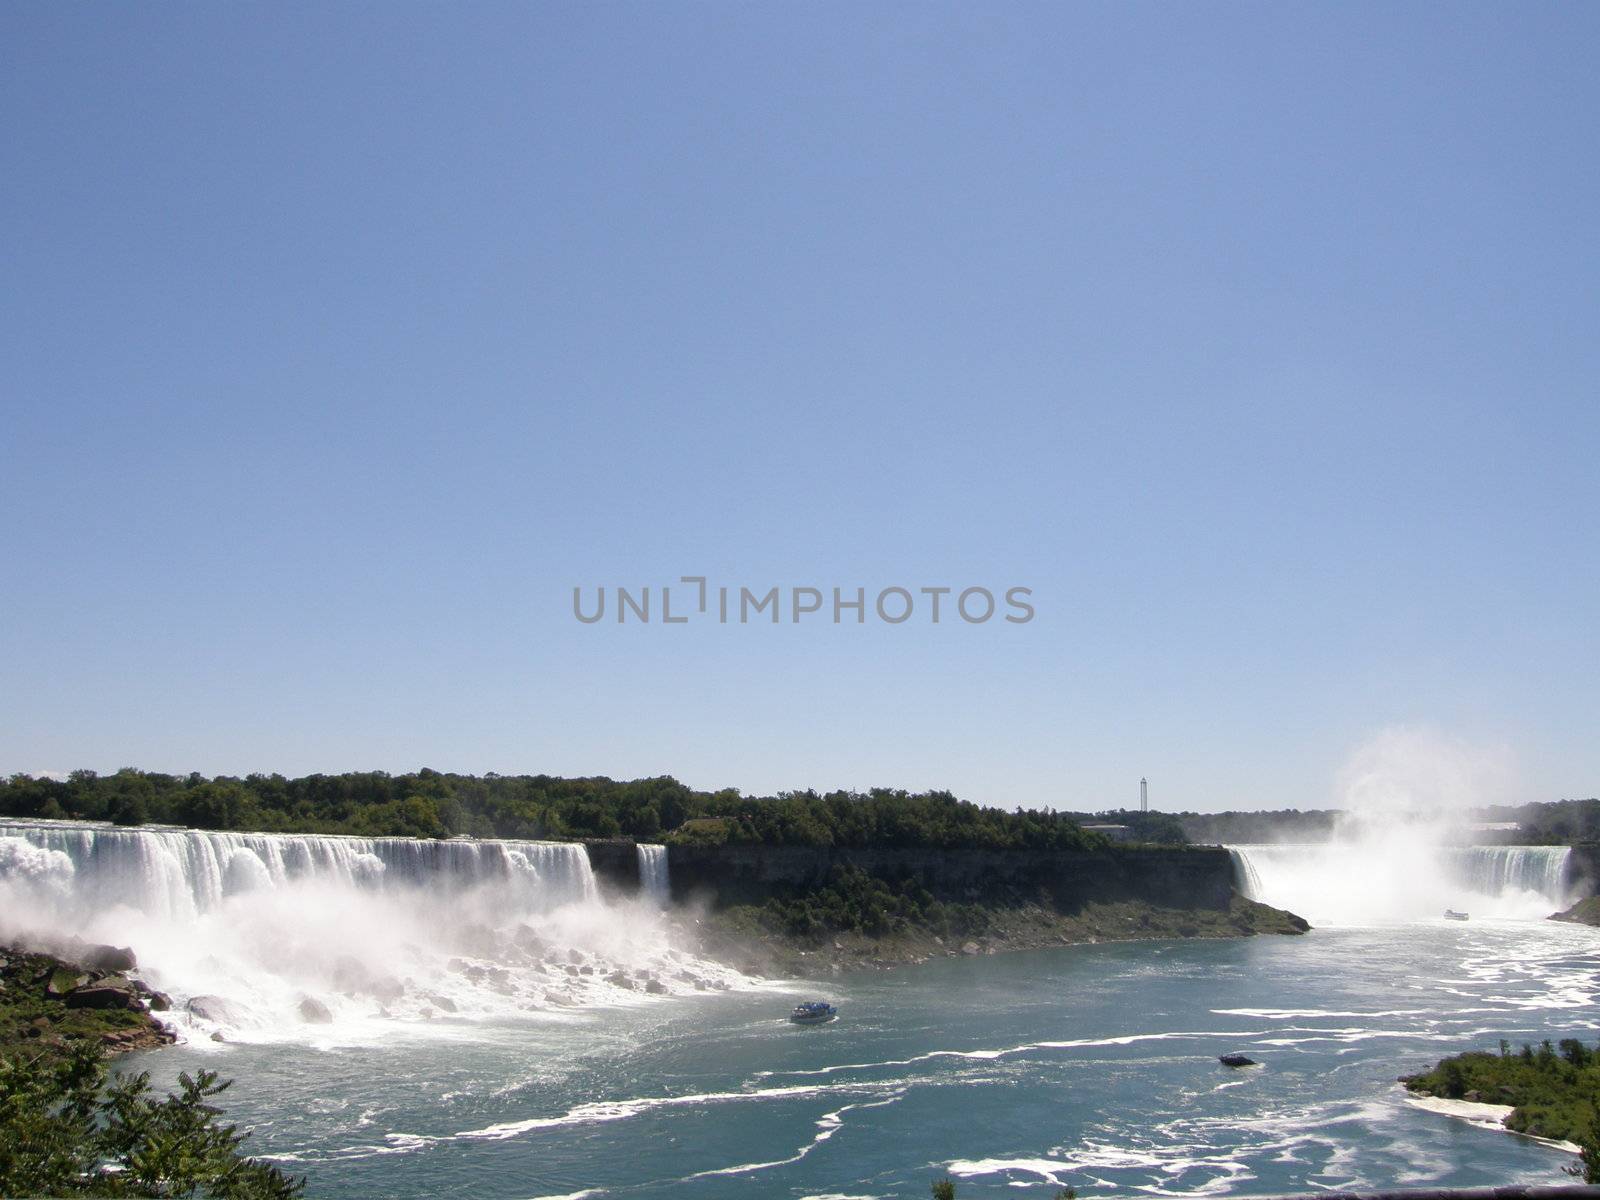 Niagara Falls at the border of USA and Canada